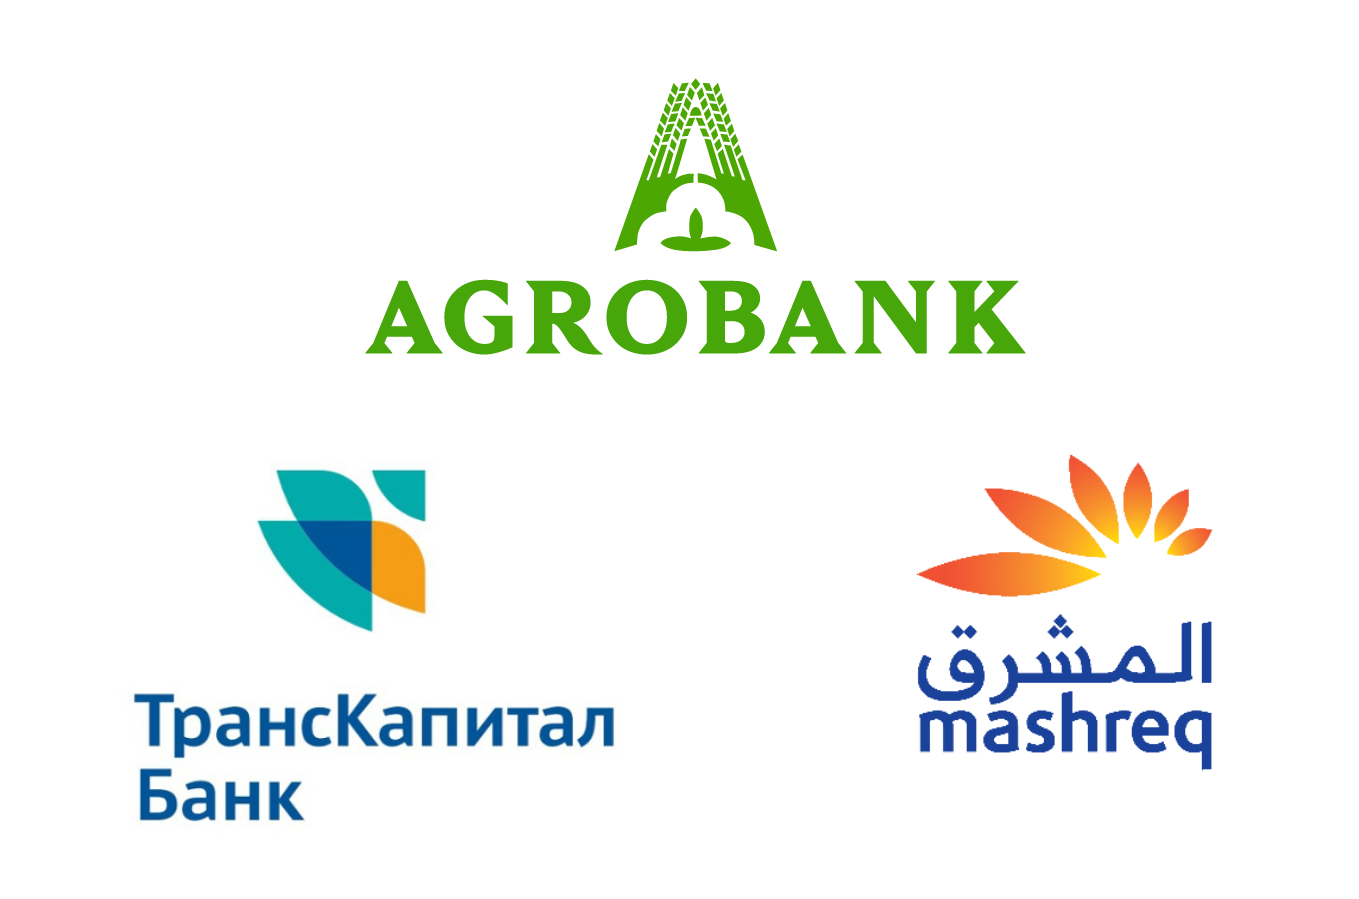 Агробанк форум доирасида “Транскапиталбанк” ва "Mashreqbank" билан битимлар имзолади